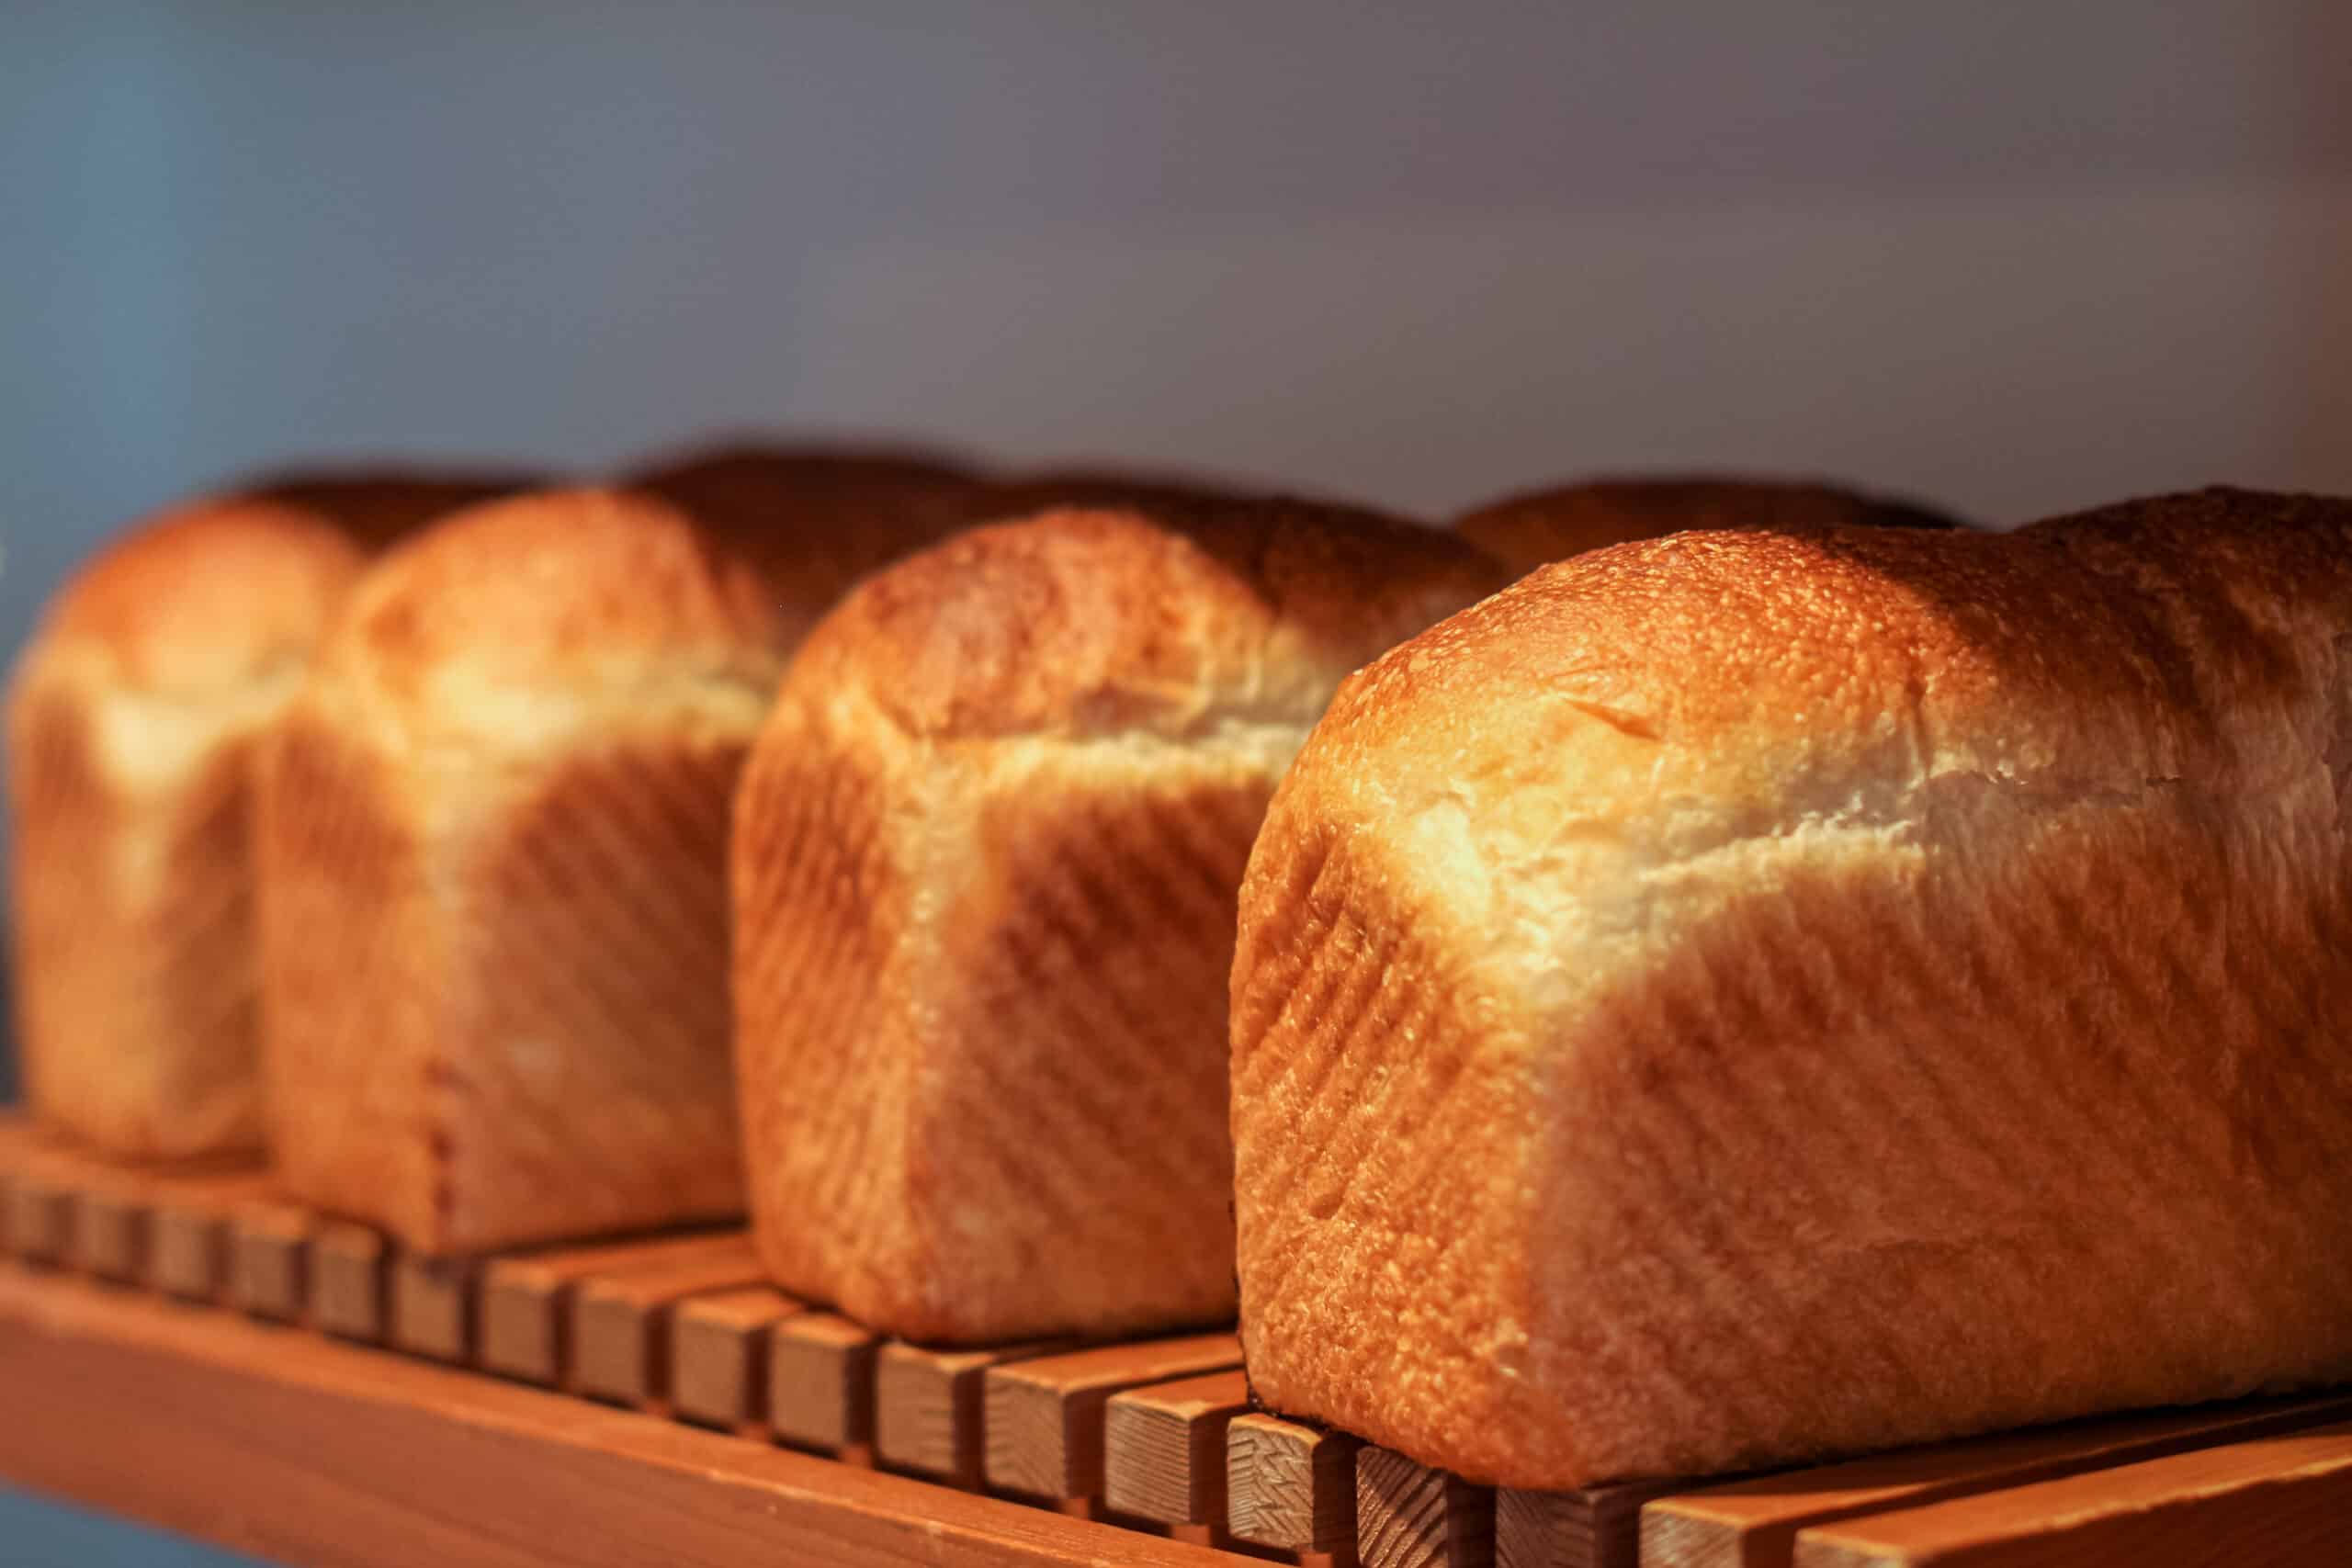 Freshly baked bread.